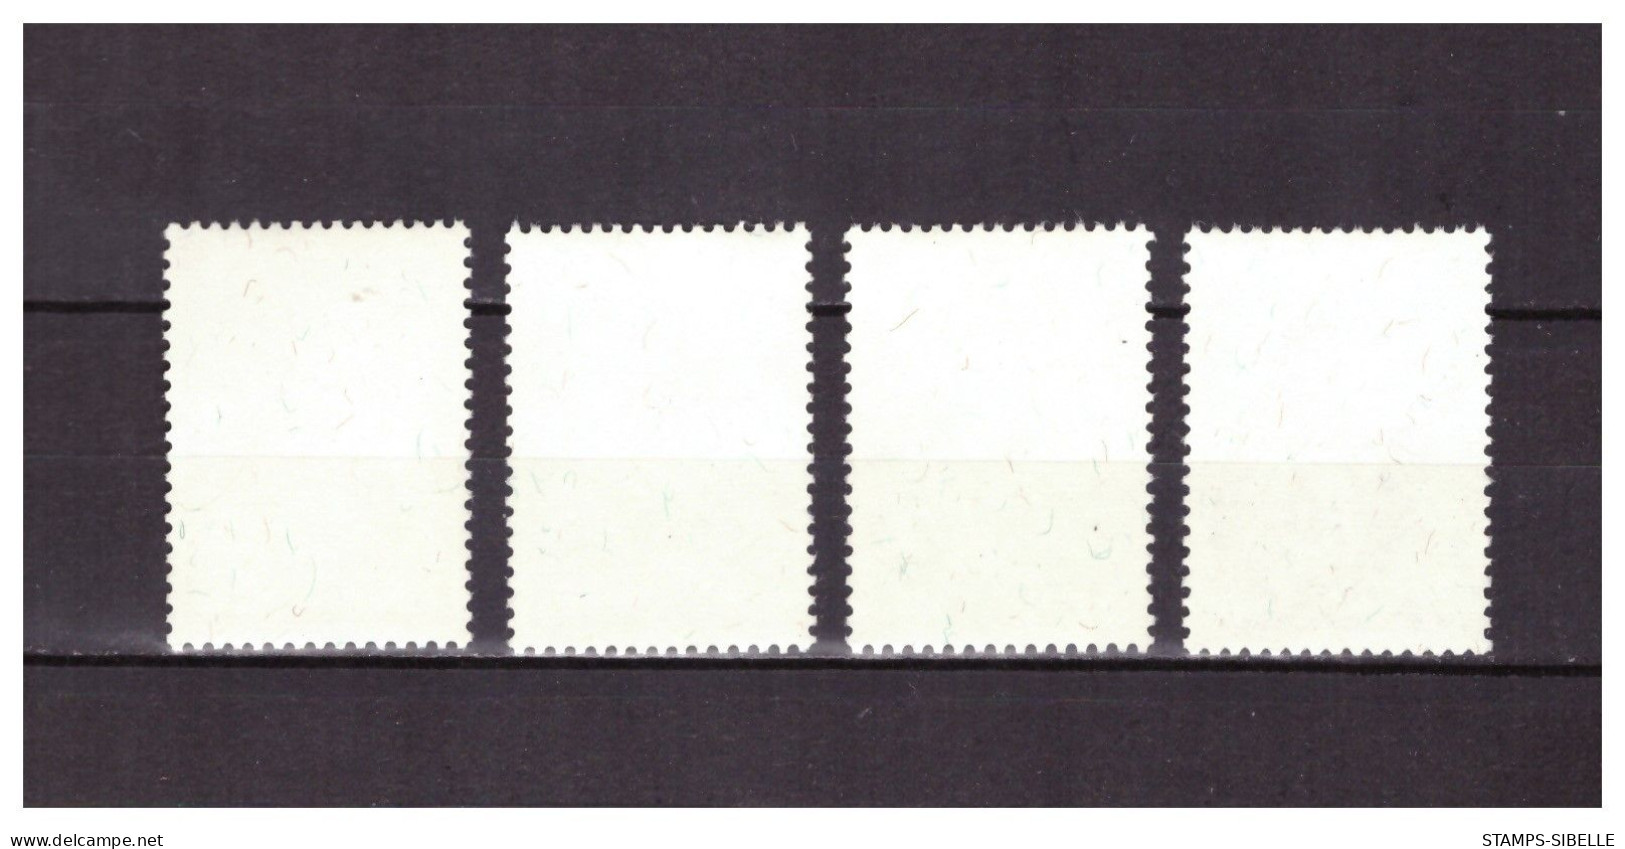 LIECHTENSTEIN   . N °  418 / 421  .  SERIE    RESTAURATION     OBLITEREE  .  SUPERBE . - Used Stamps